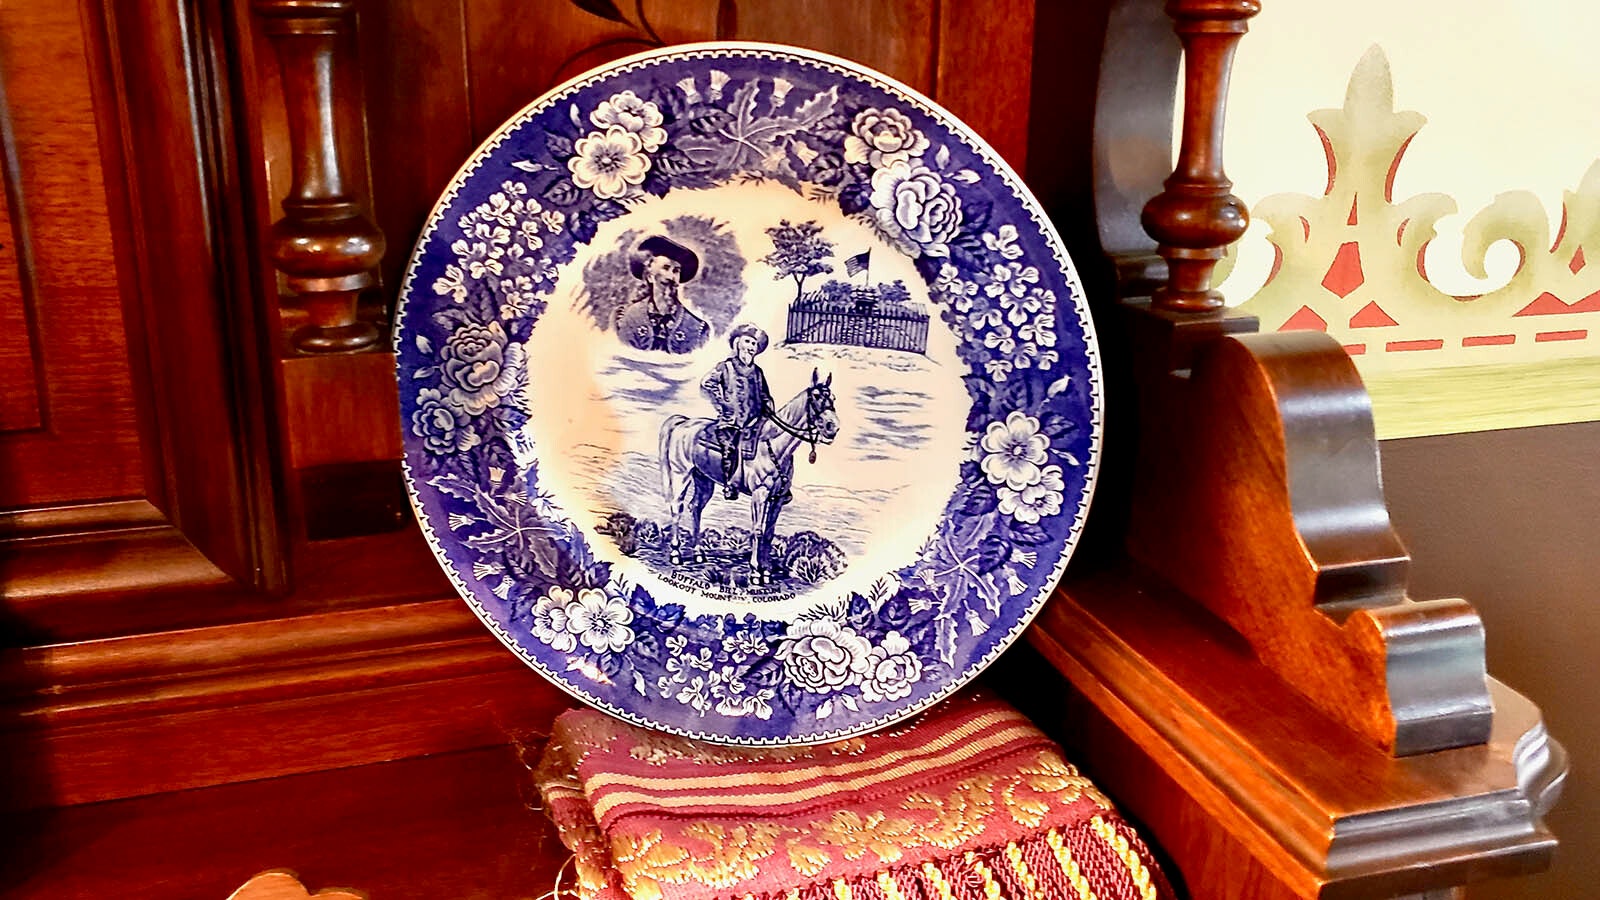 A plate showing Buffalo Bill Cody.